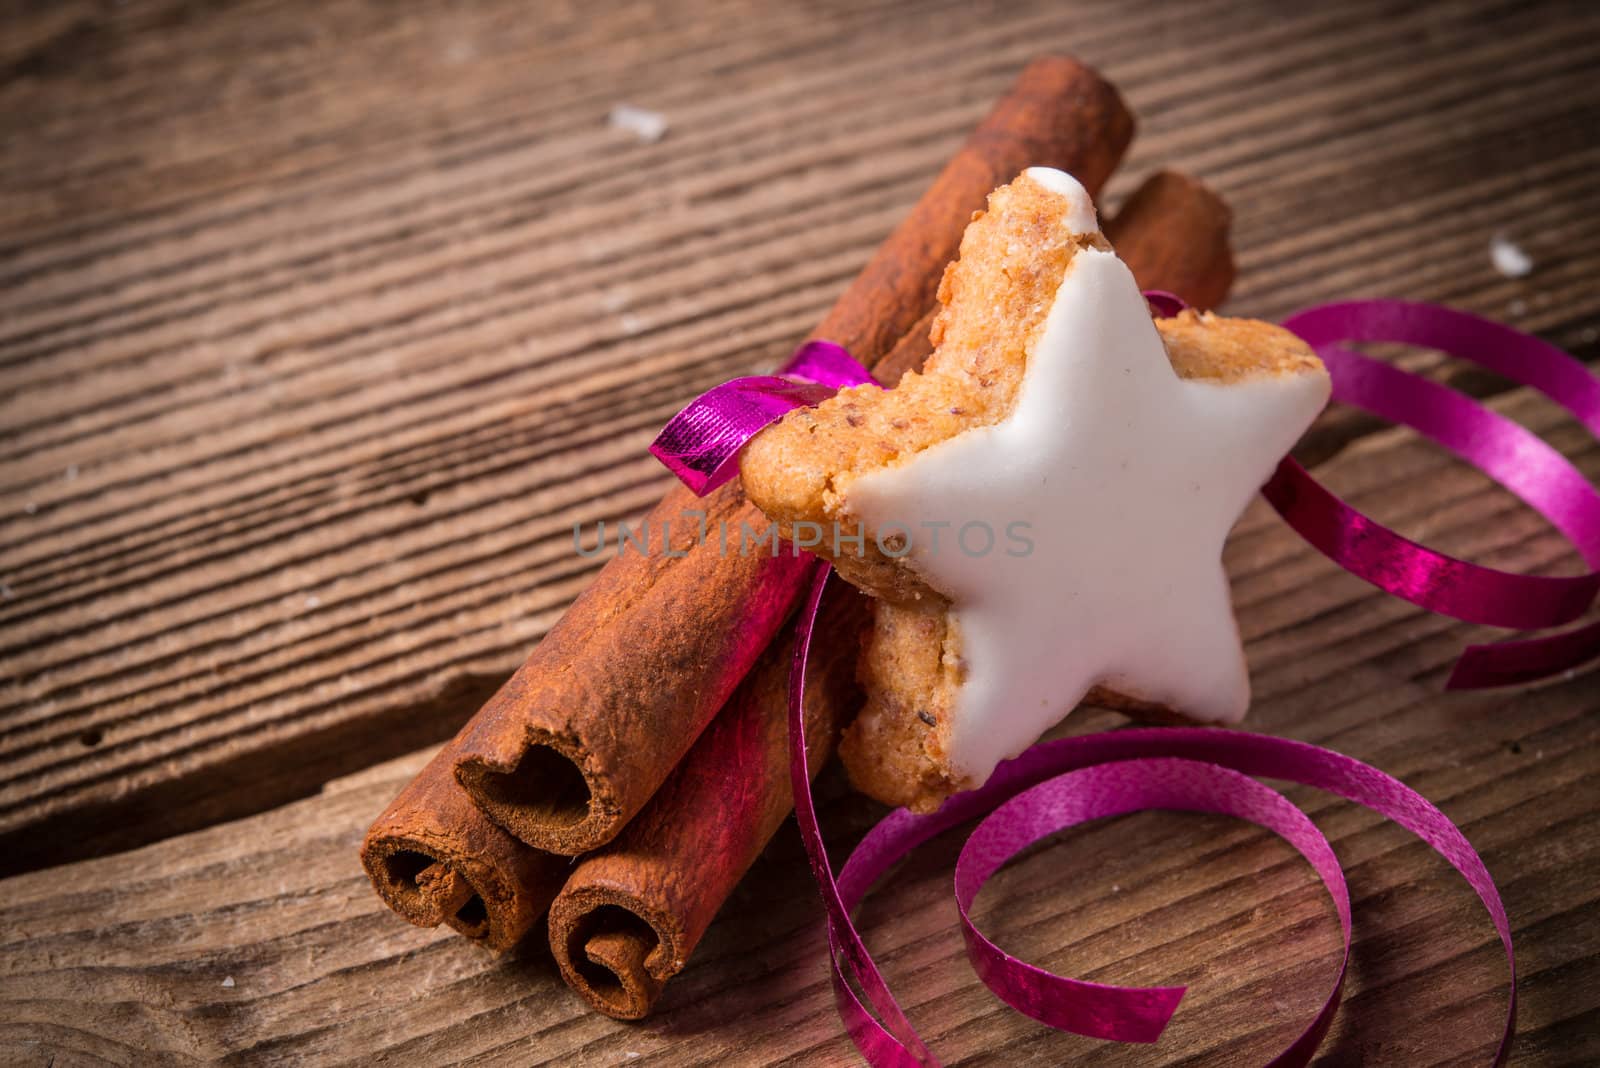 cinnamon sticks and Christmas cake